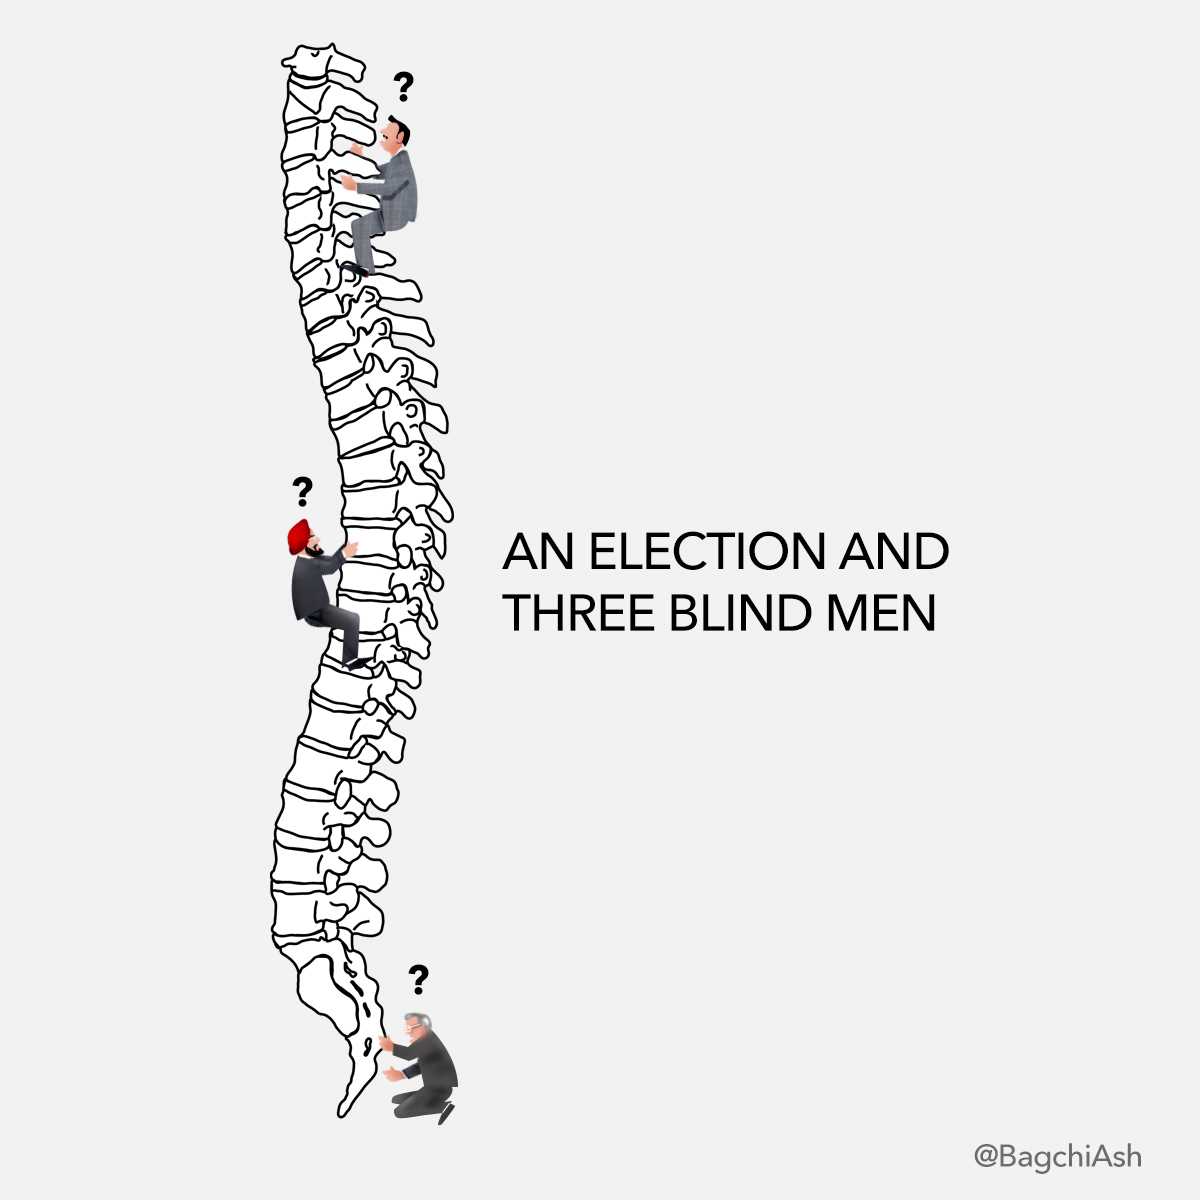 #ECI
#GrowASpineOrResign 
#LokSabhaElection2024